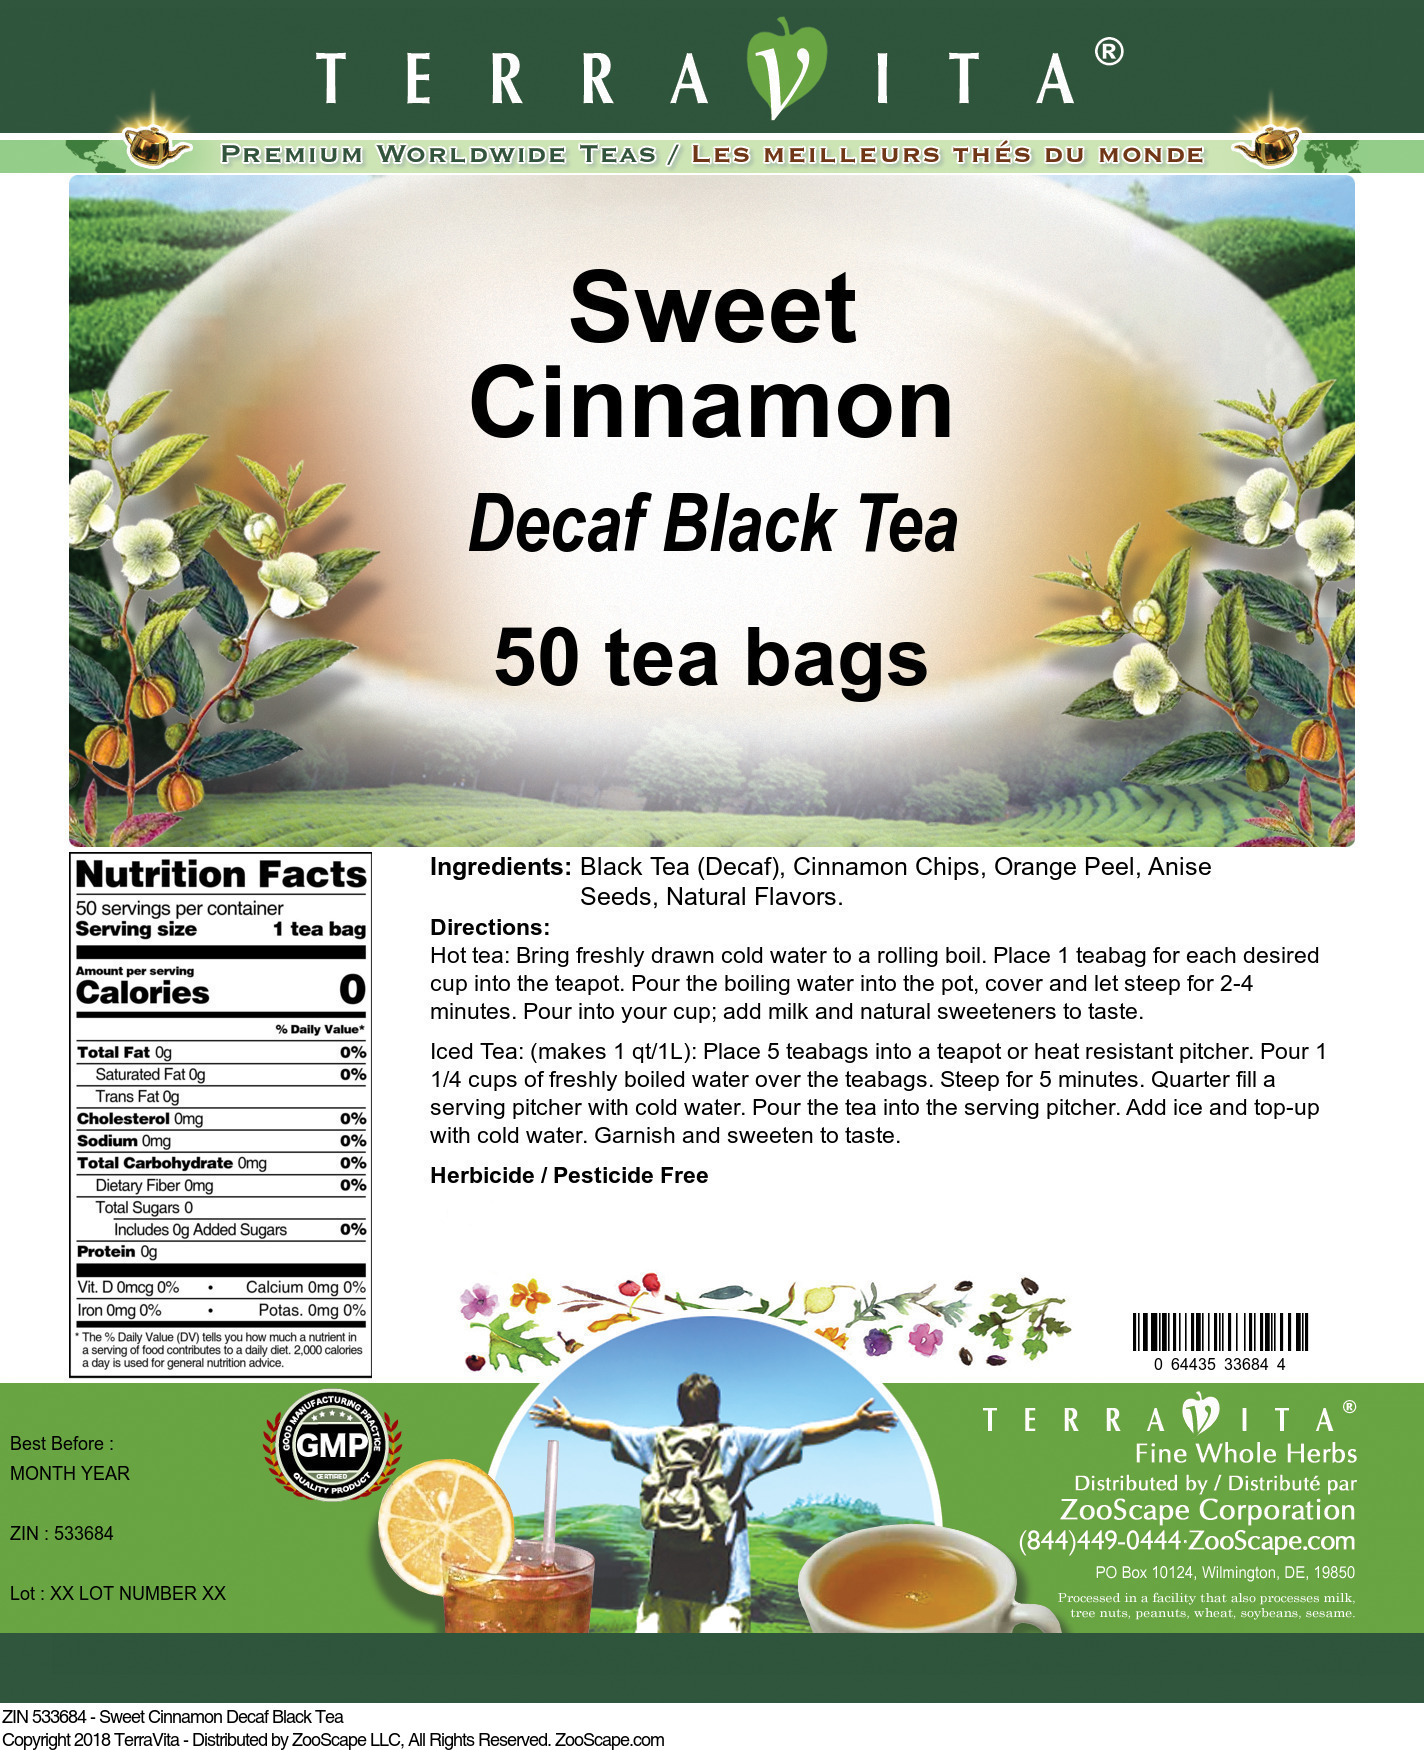 Sweet Cinnamon Decaf Black Tea - Label